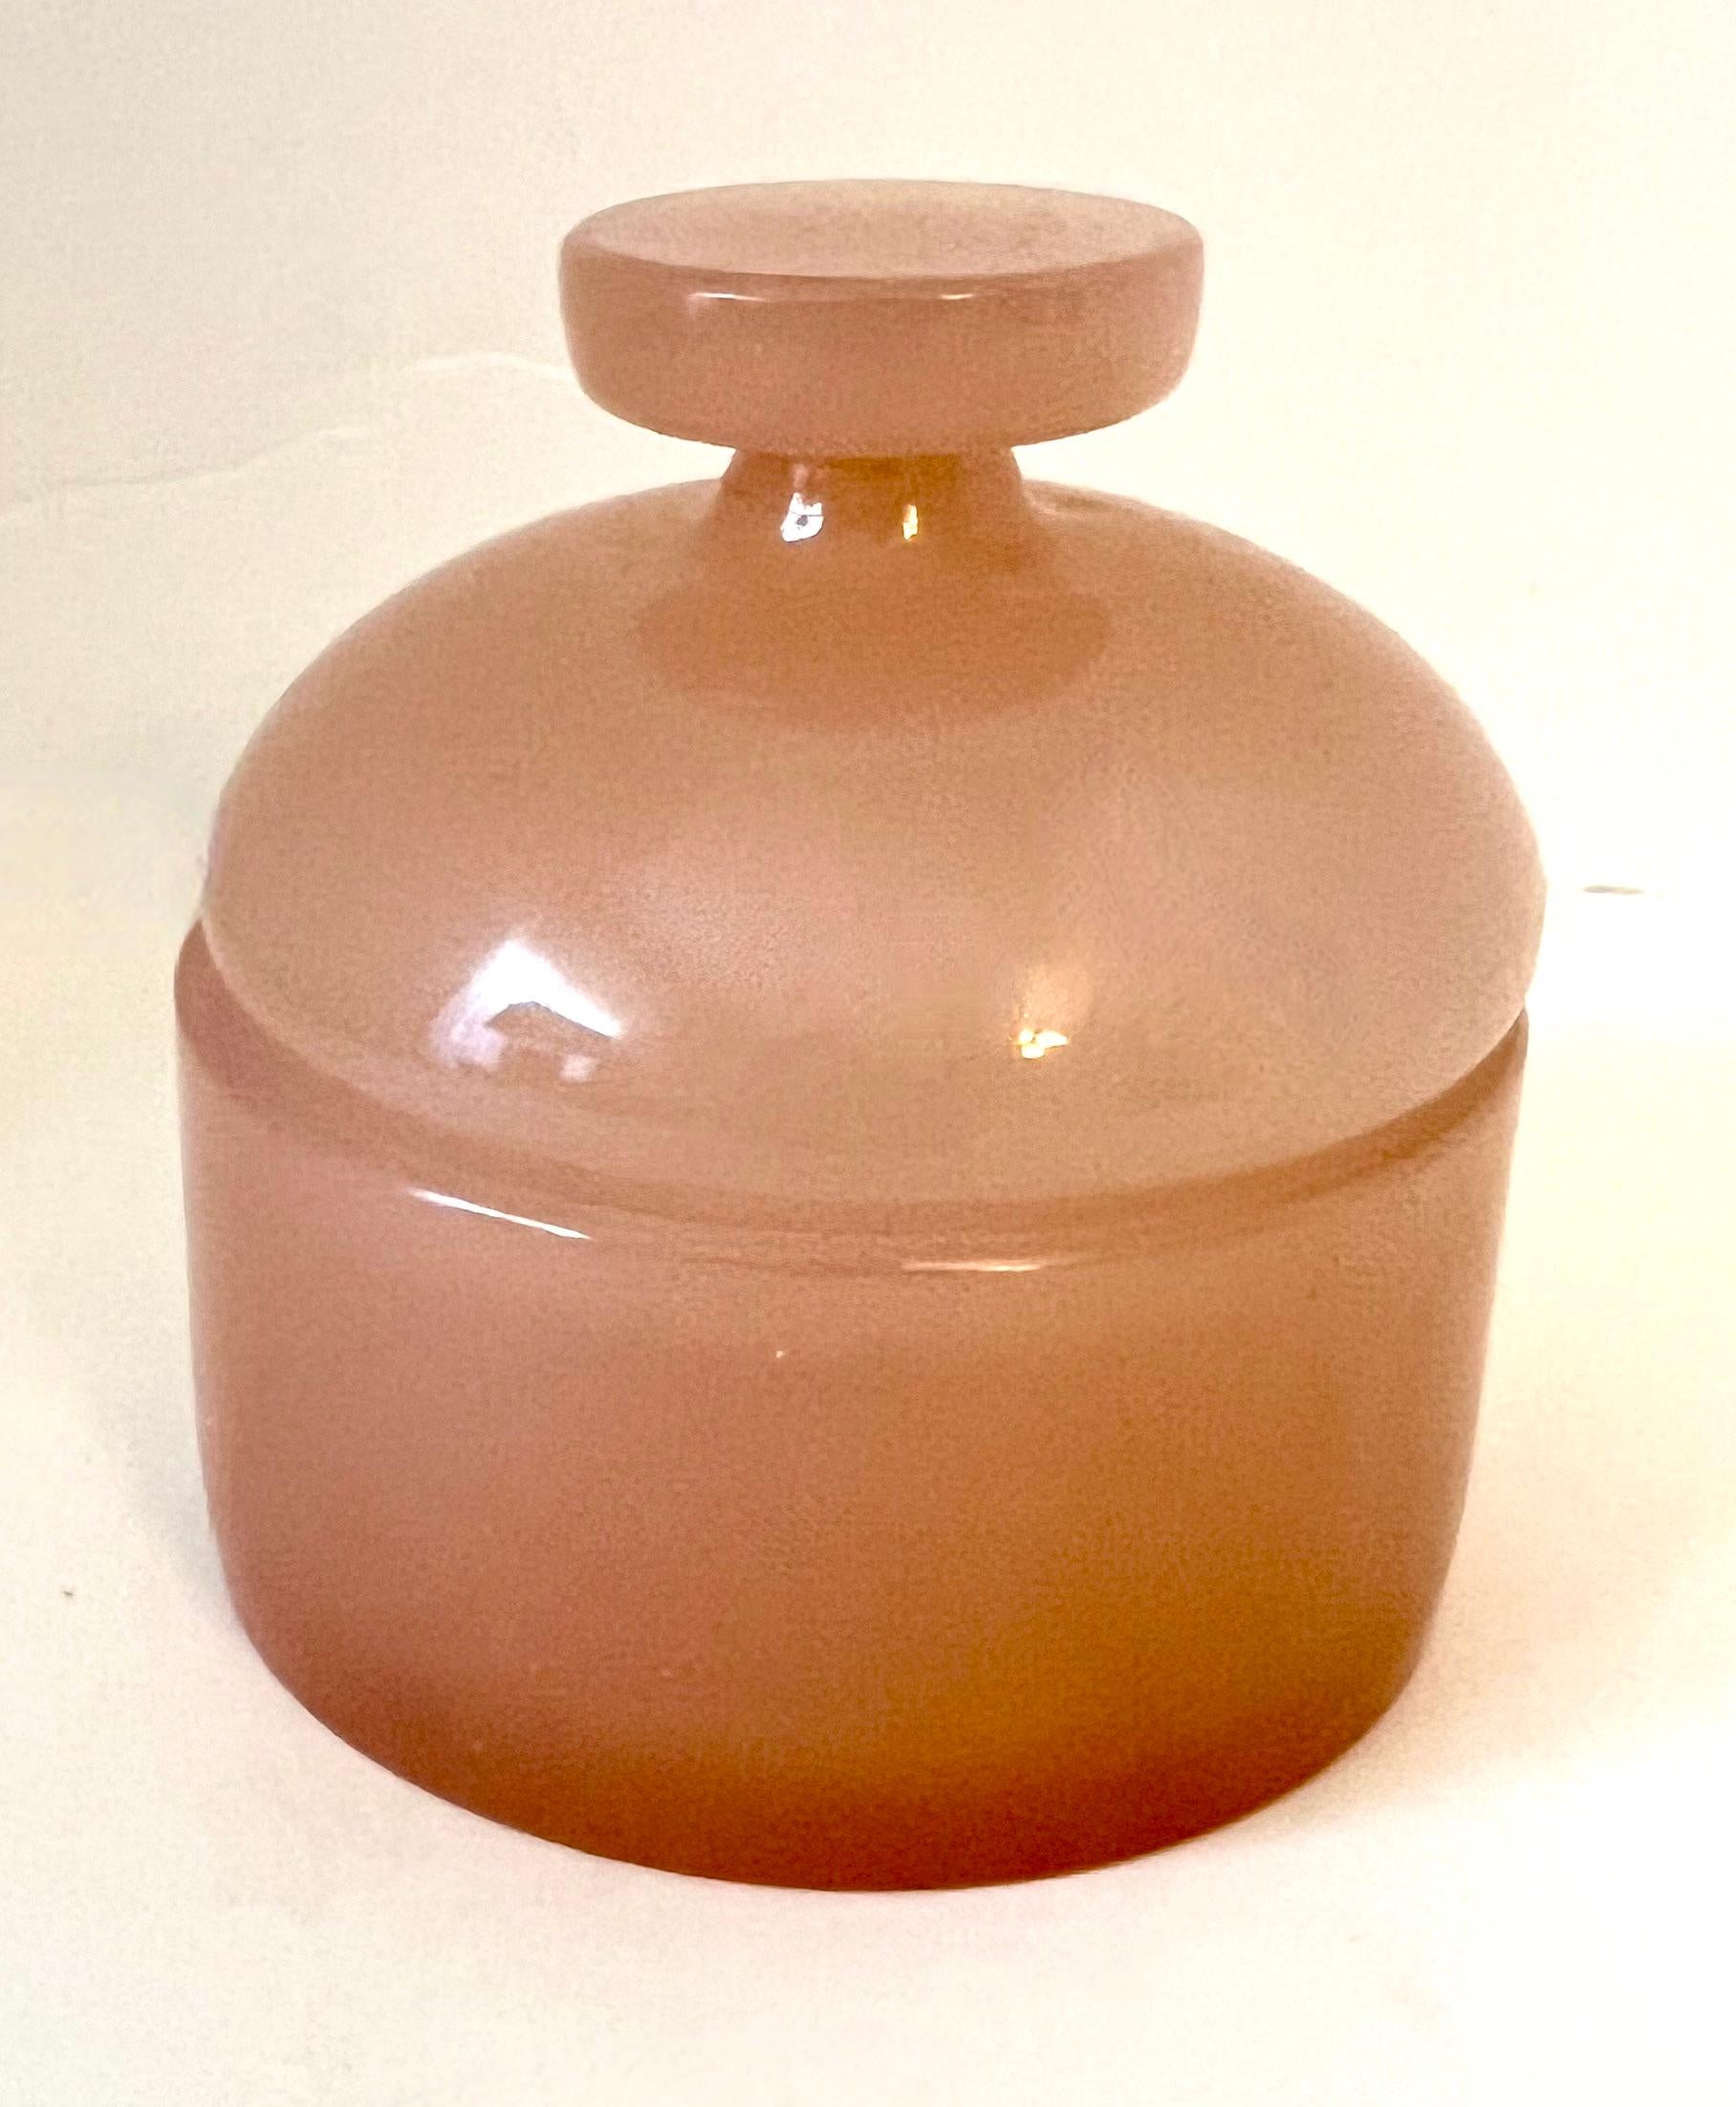 Handgeblasener italienischer Murano Cenedese Apotheker Krug.  Das Stück hat einen einzigartigen rosa Farbton.  Ein Kompliment für jeden Waschtisch, Schreibtisch oder Arbeitsplatz.

Can alles halten, von Bonbons bis hin zu Wattebällchen oder